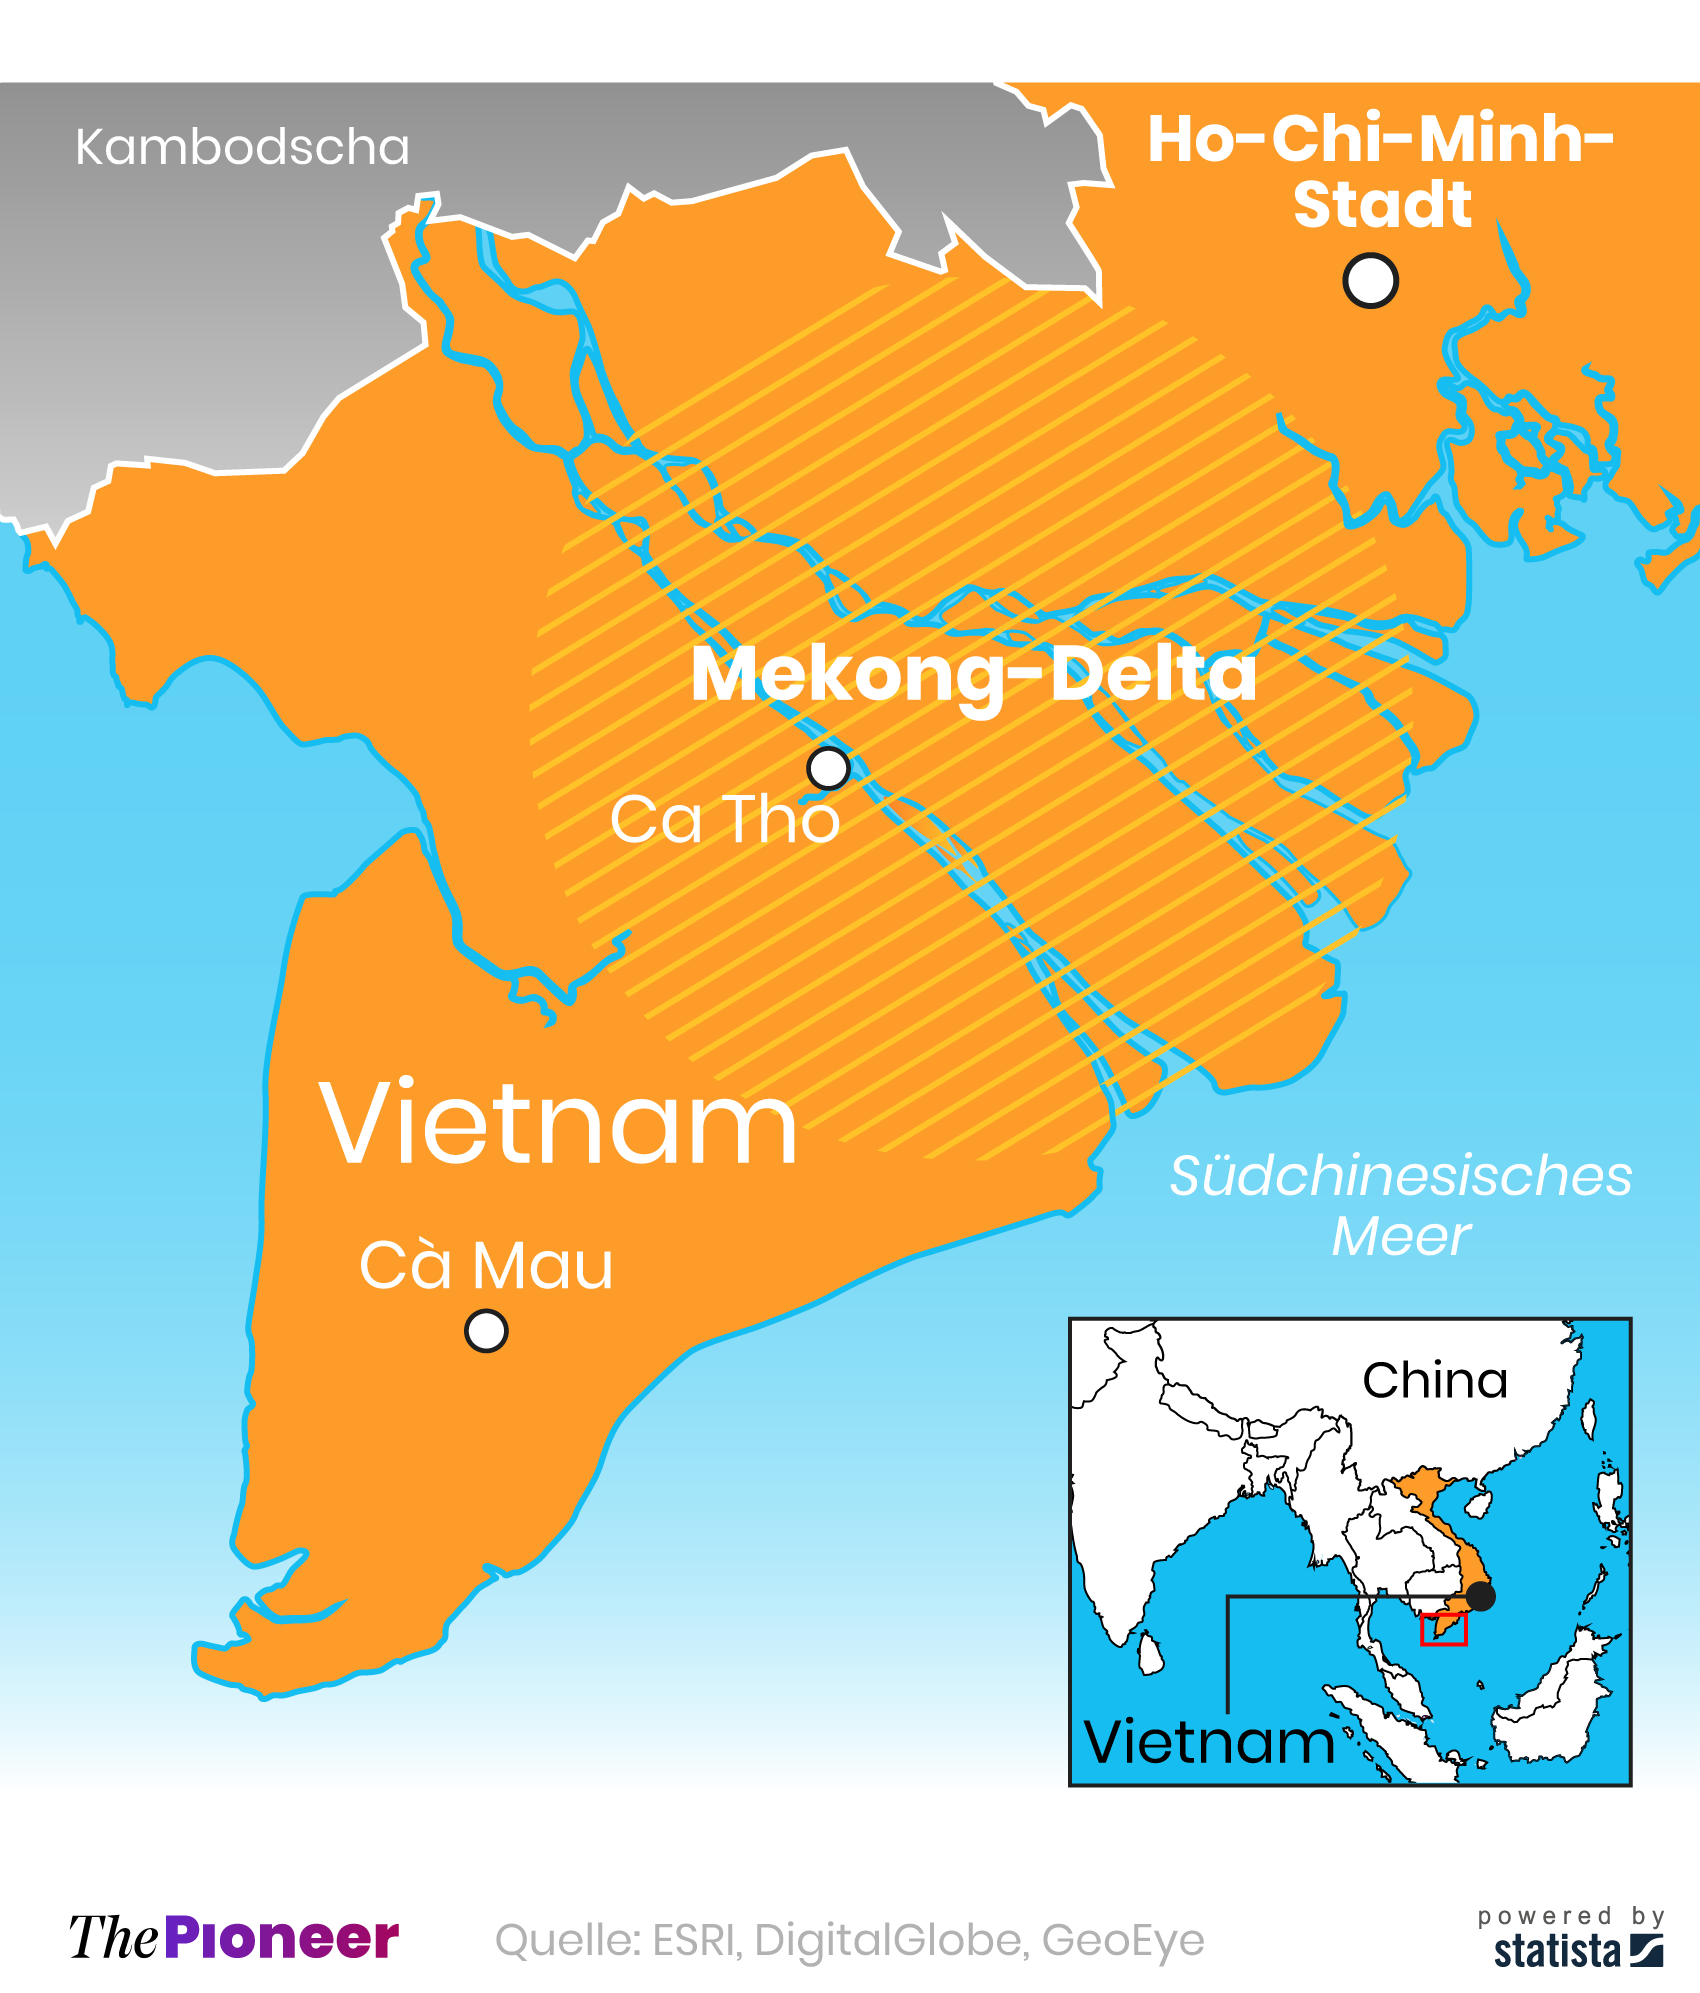  Darstellung des Mekong-Deltas in Vietnam